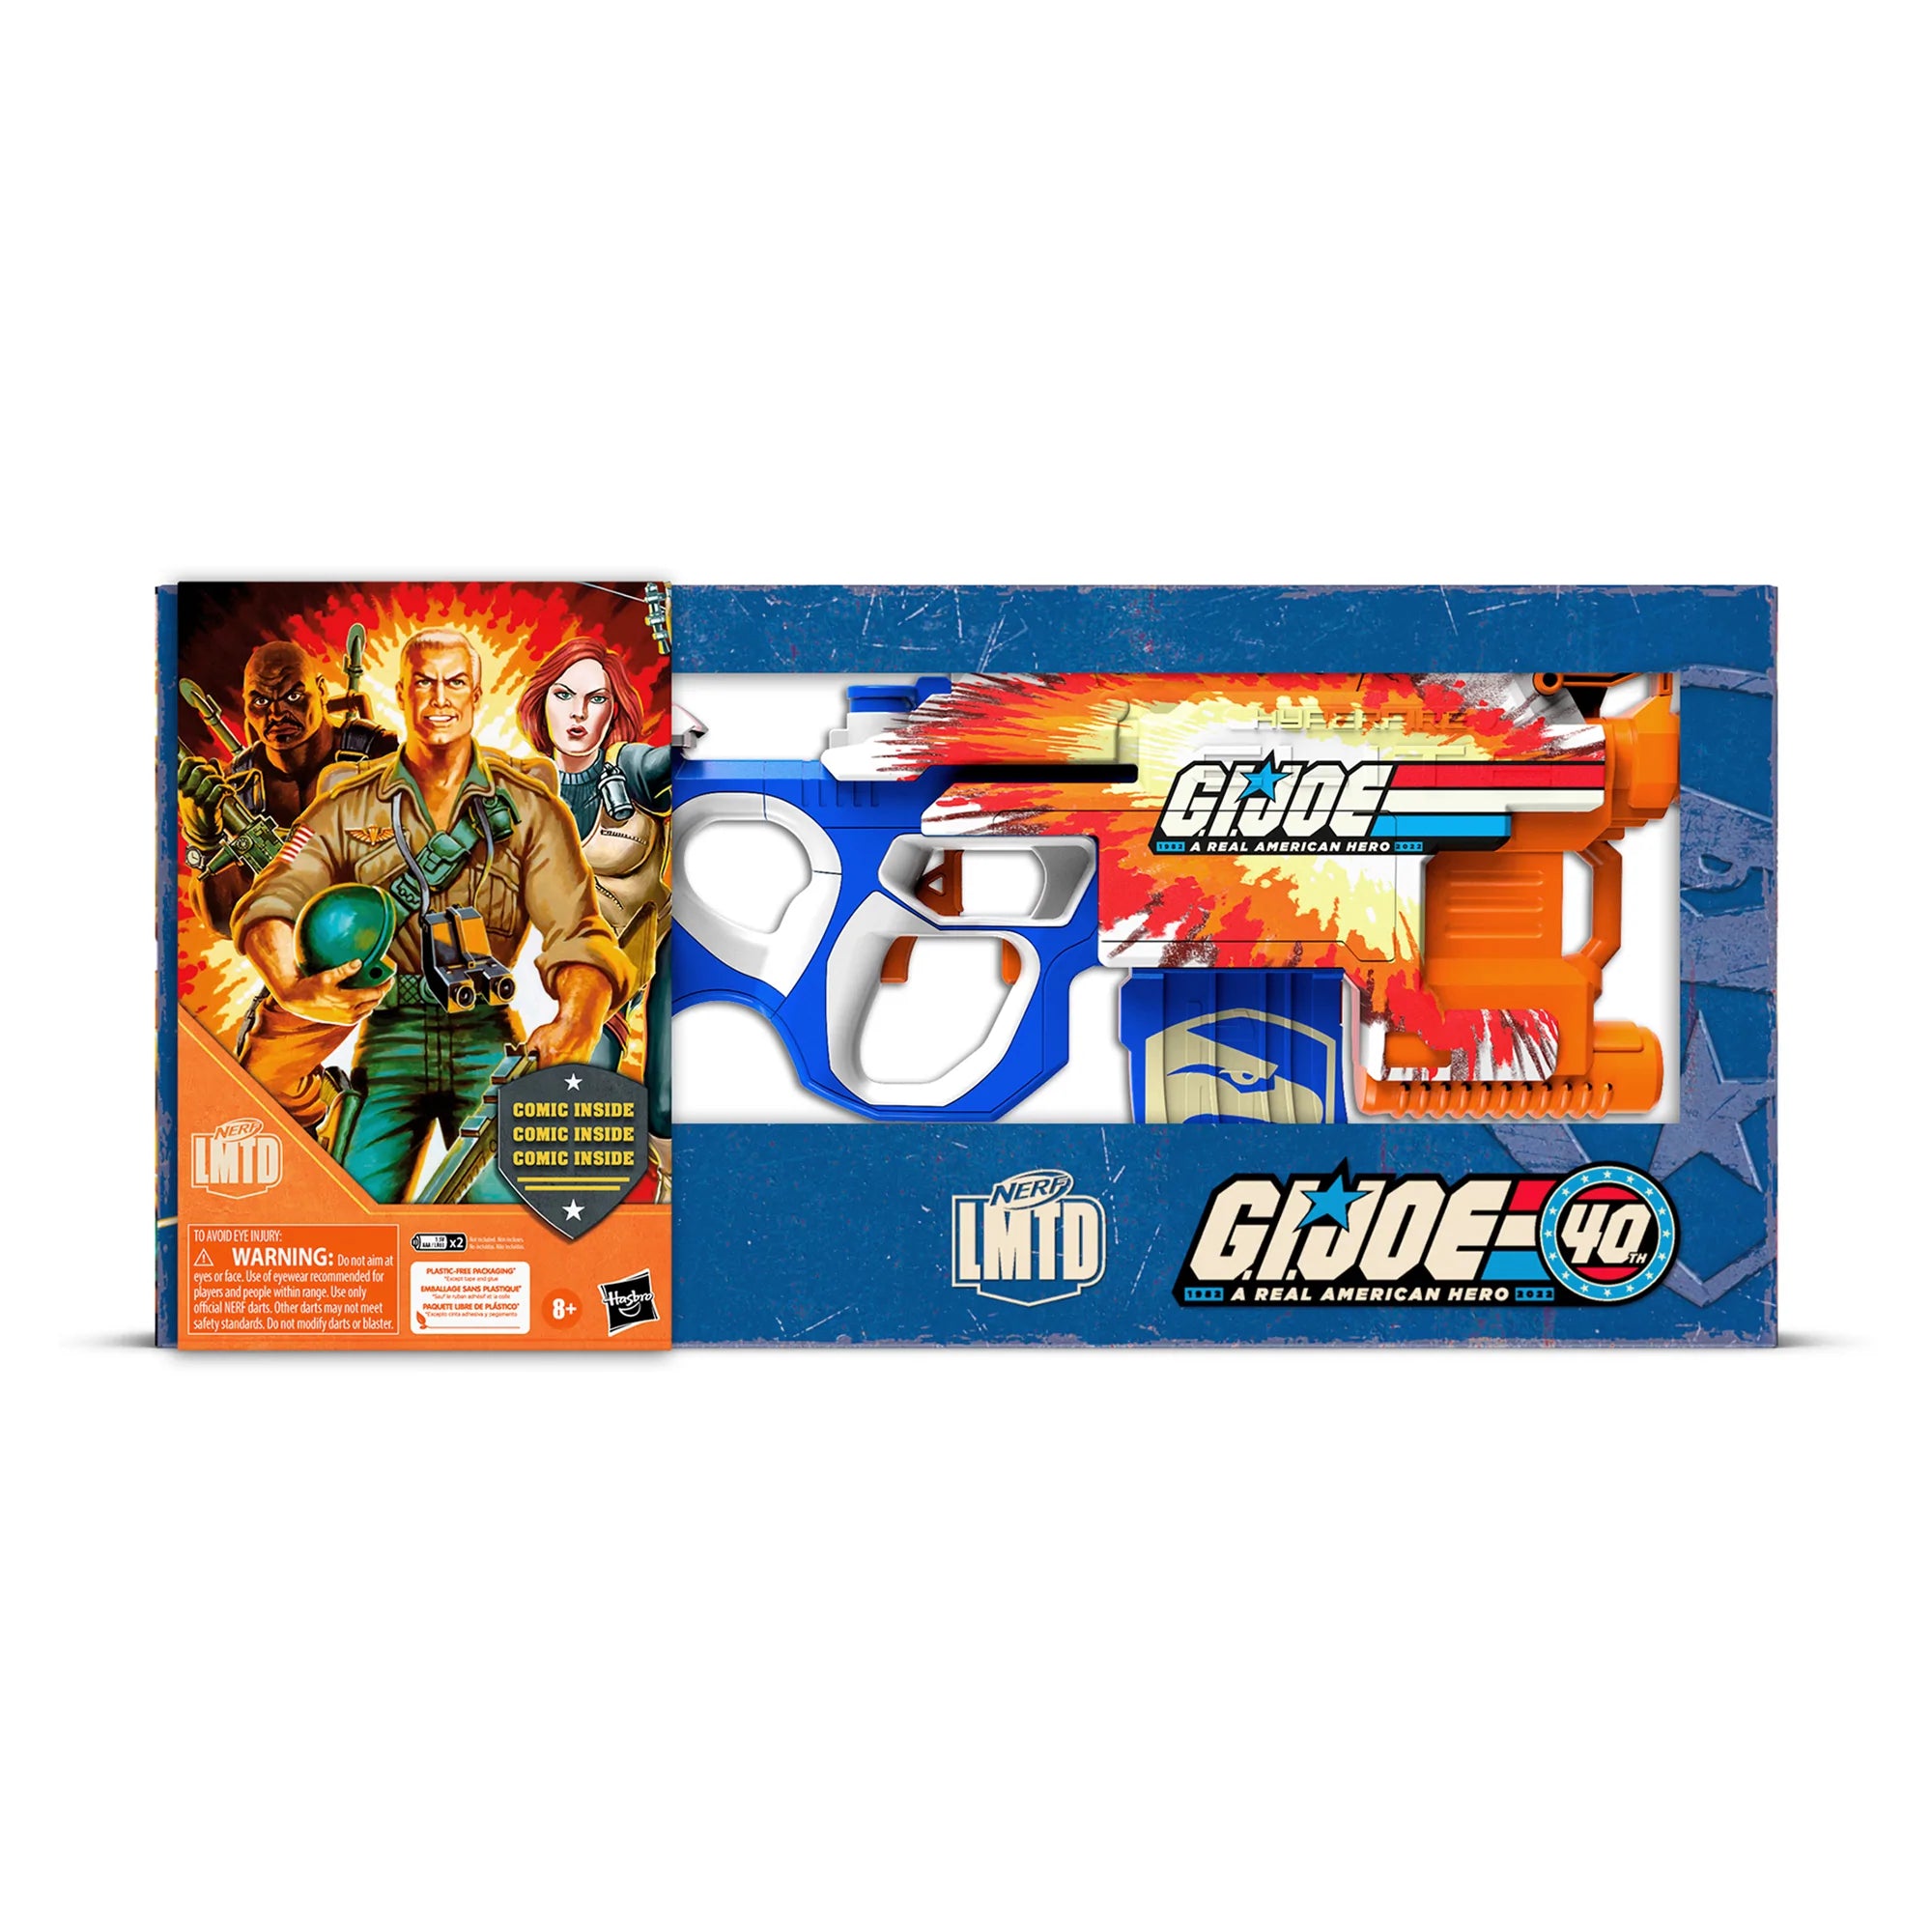 Hasbro - Nerf LMTD - G.I. Joe - GI-40 Blaster - Marvelous Toys